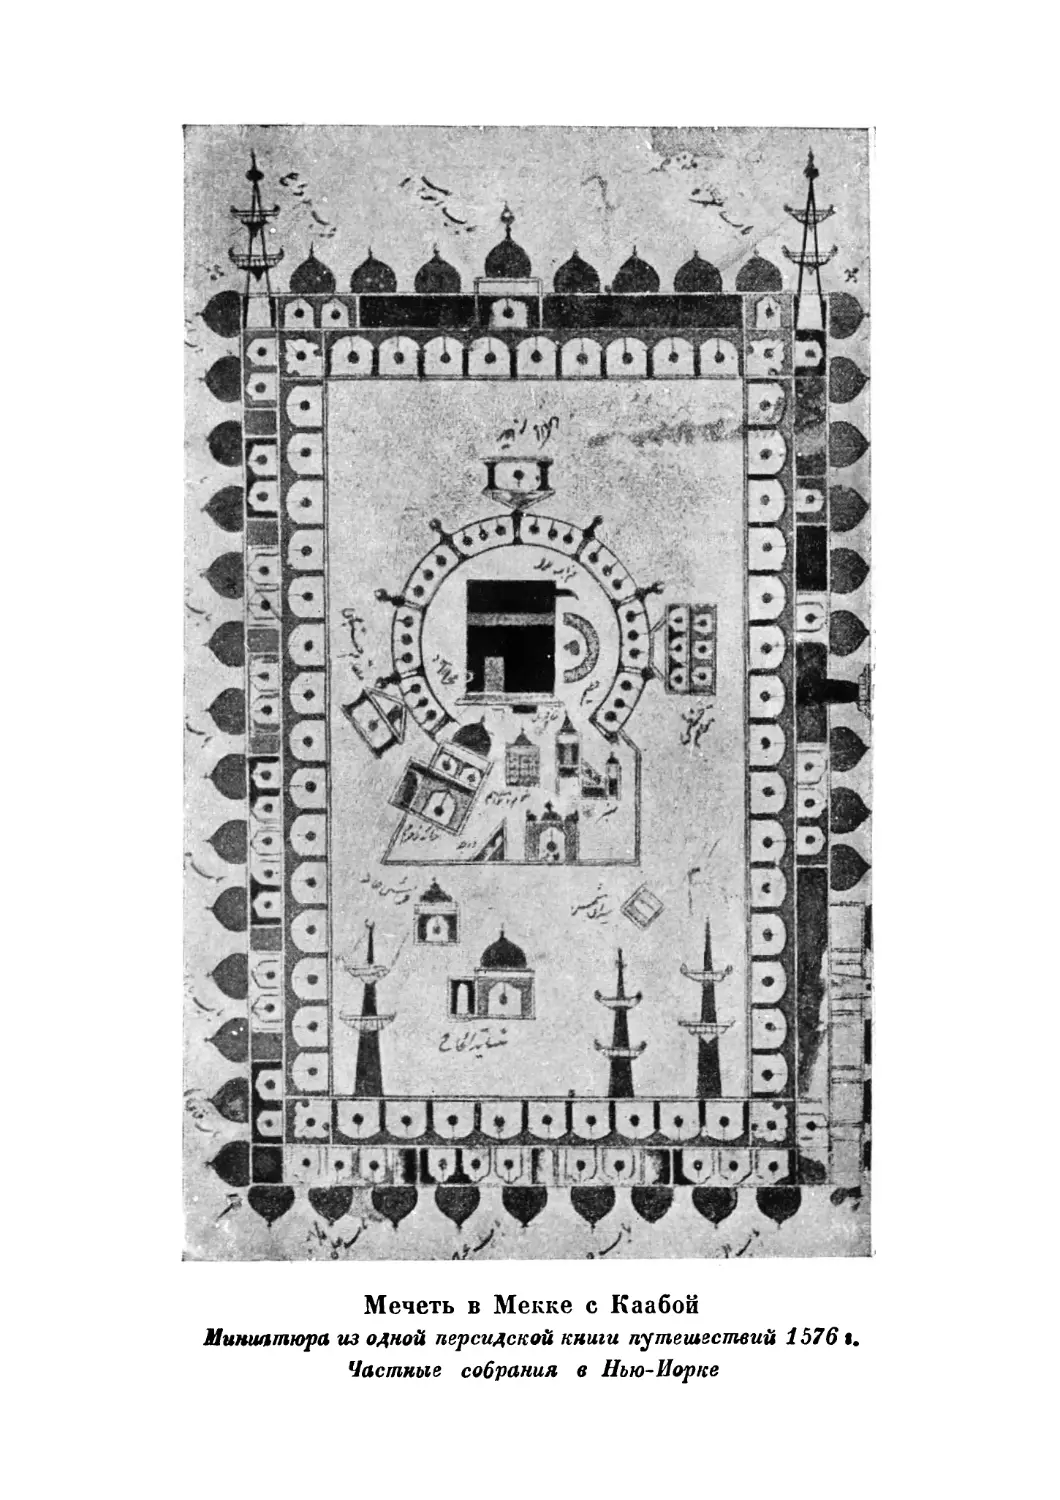 Вклейка. Мечеть в Мекке с Каабой. Мипиатюра из одной персидской книги путешествий 1576 г.